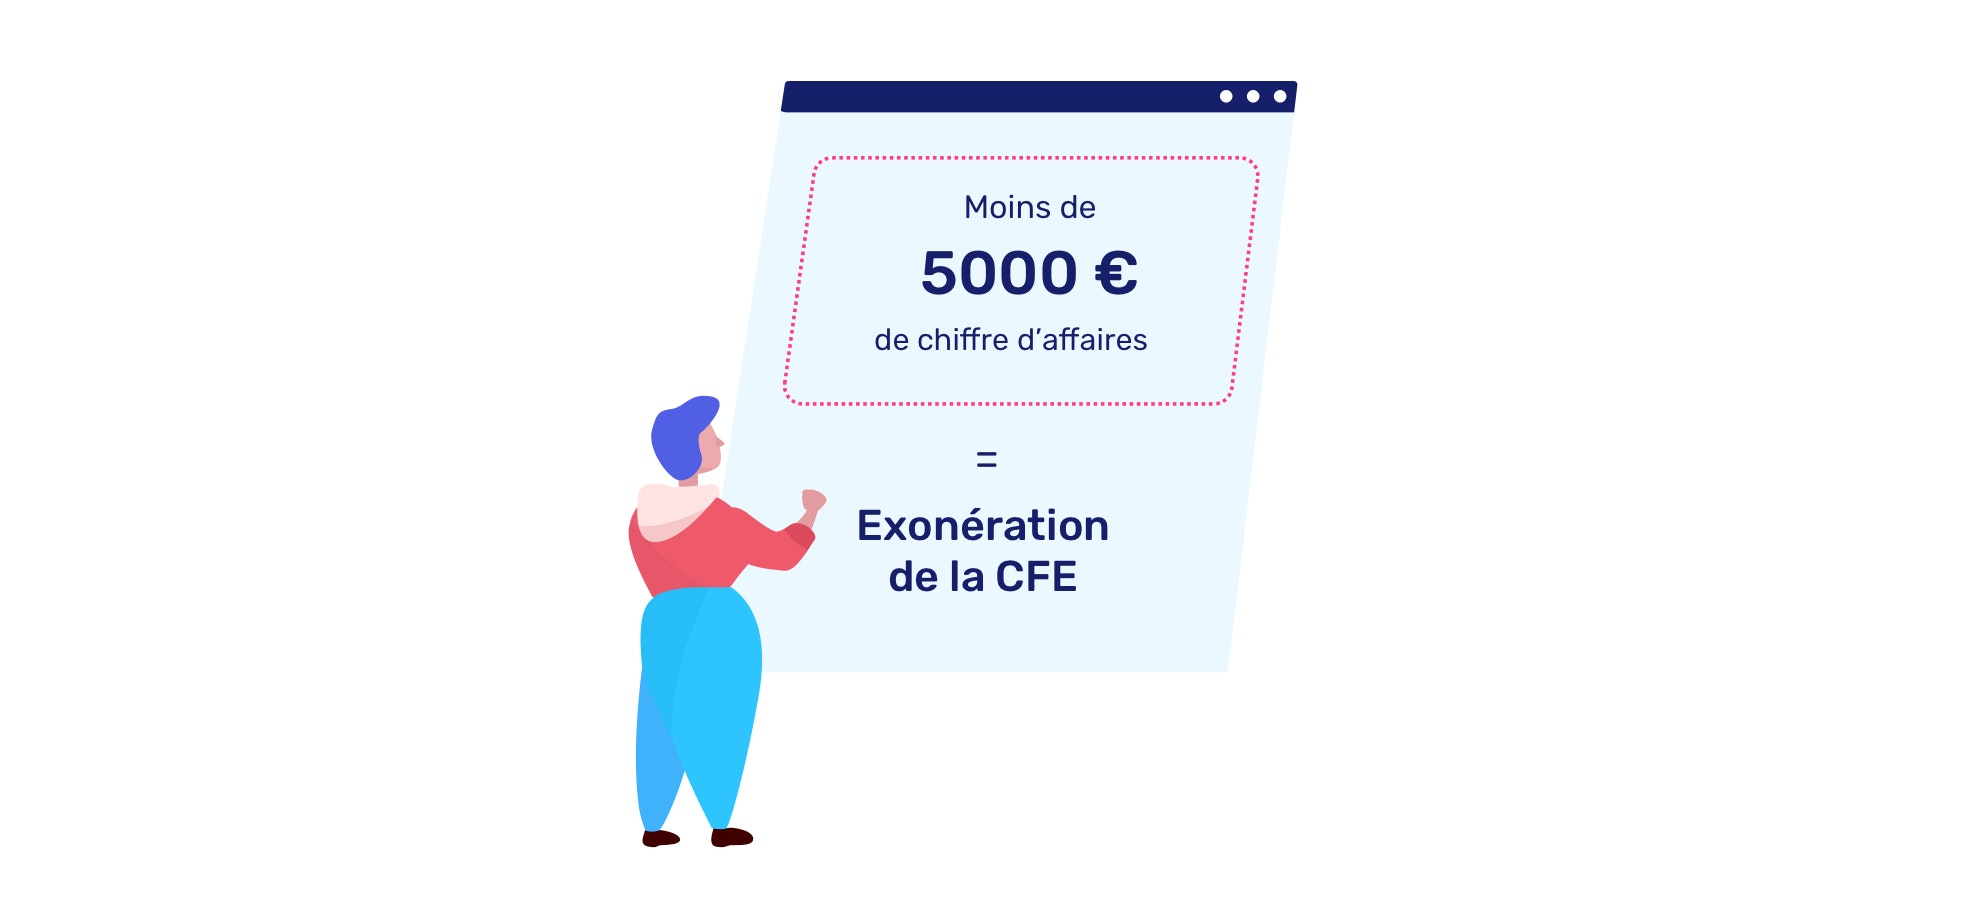 Exonération de CFE en dessous de 5000 euros de chiffre d'affaires changement 2019